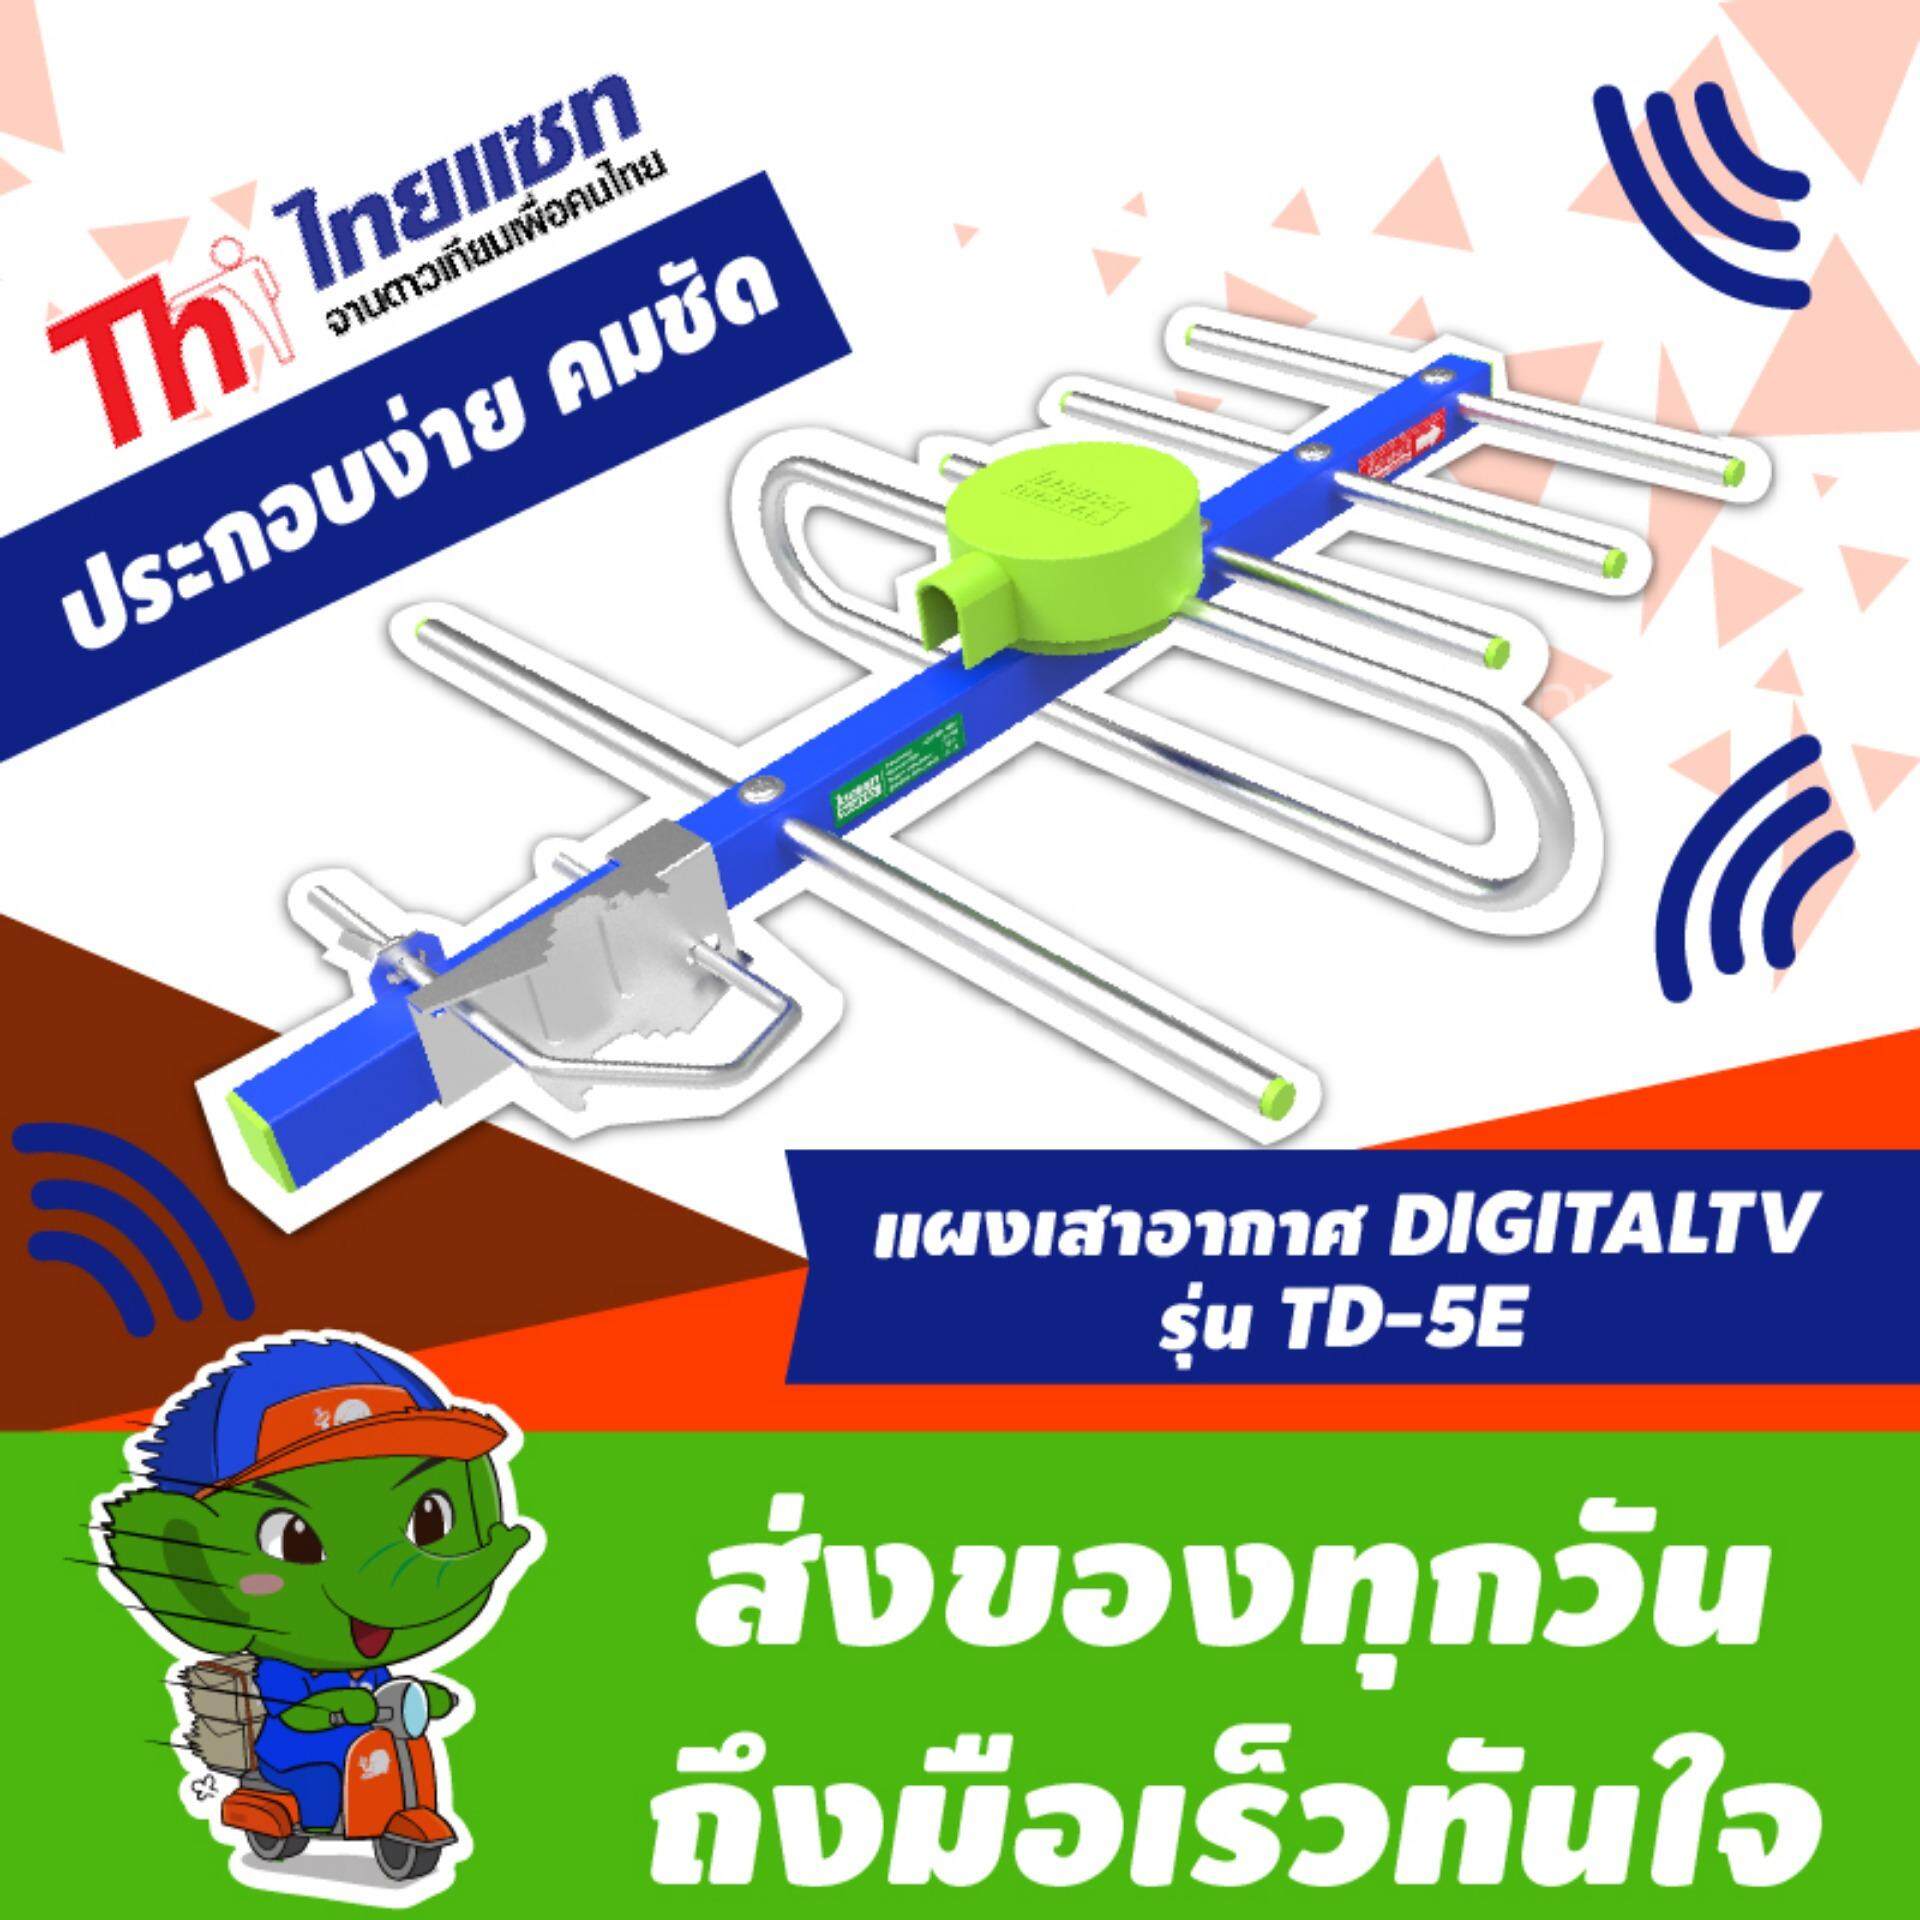 Thaisat เสาอากาศ ดิจิตอล ไทยแซท รุ่น Td-5E รับสัญญาณได้ไกล ( คละสี )